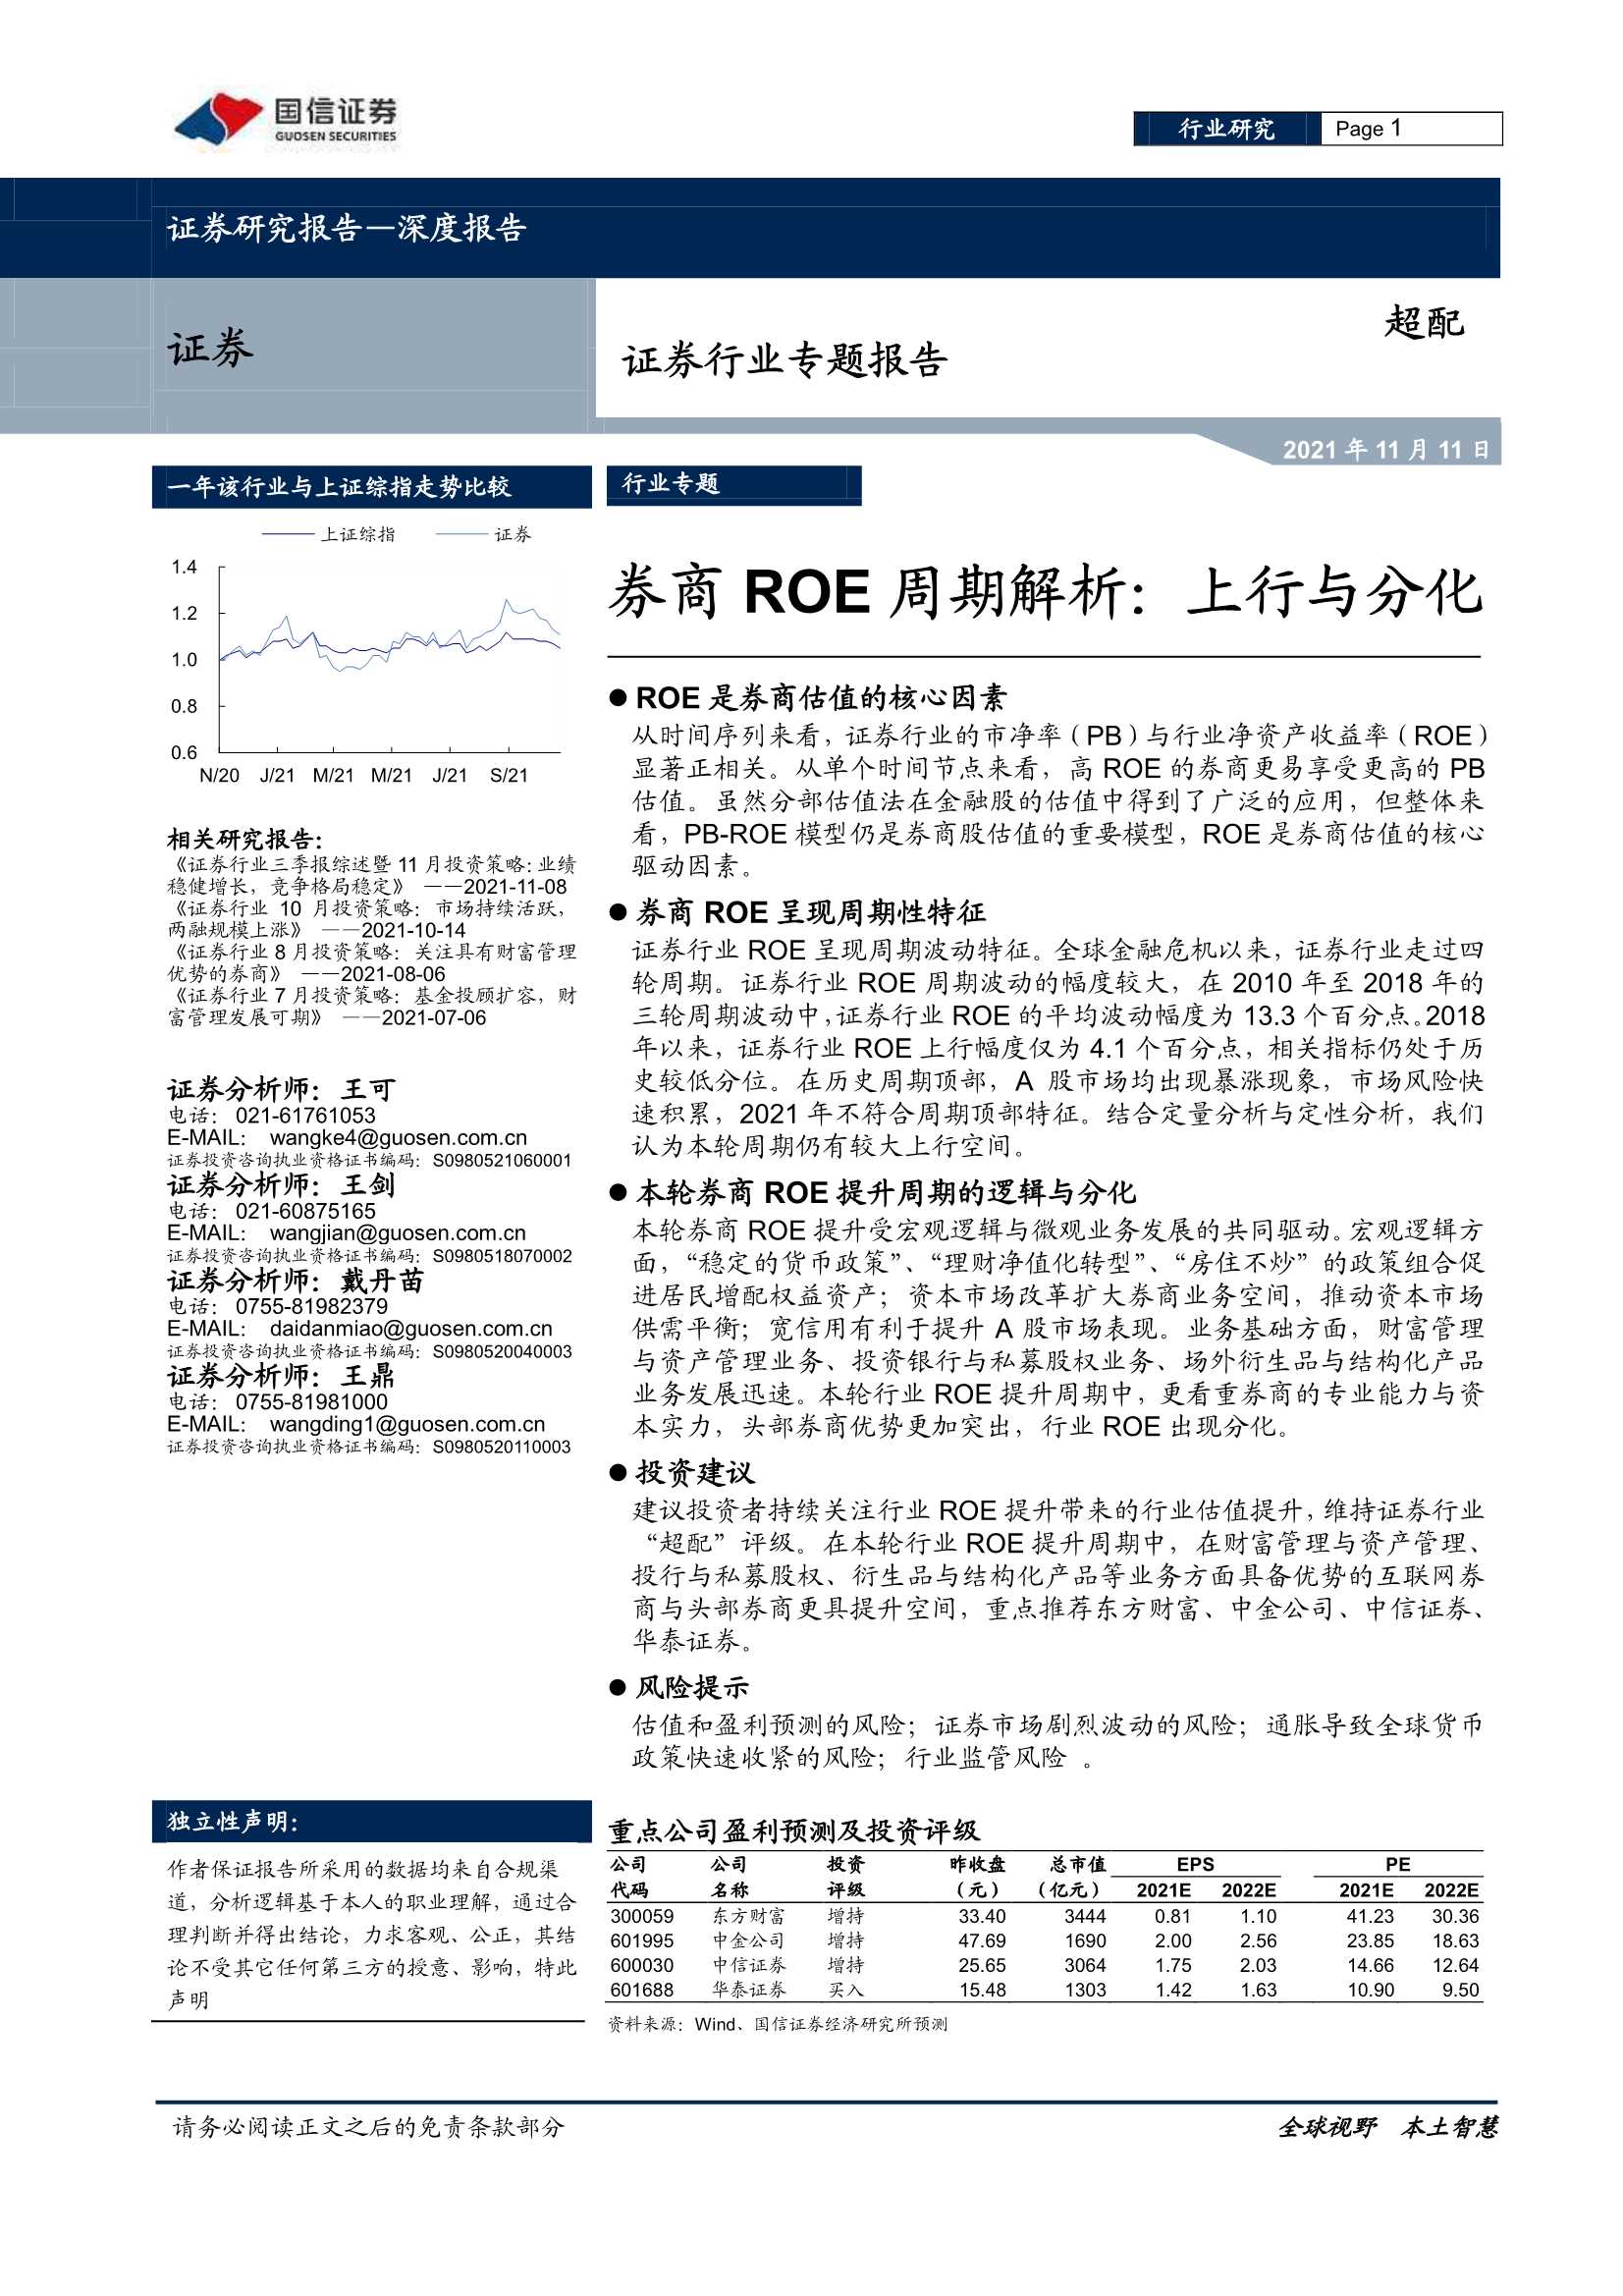 国信证券-证券行业专题报告：券商ROE周期解析，上行与分化-20211111-29页